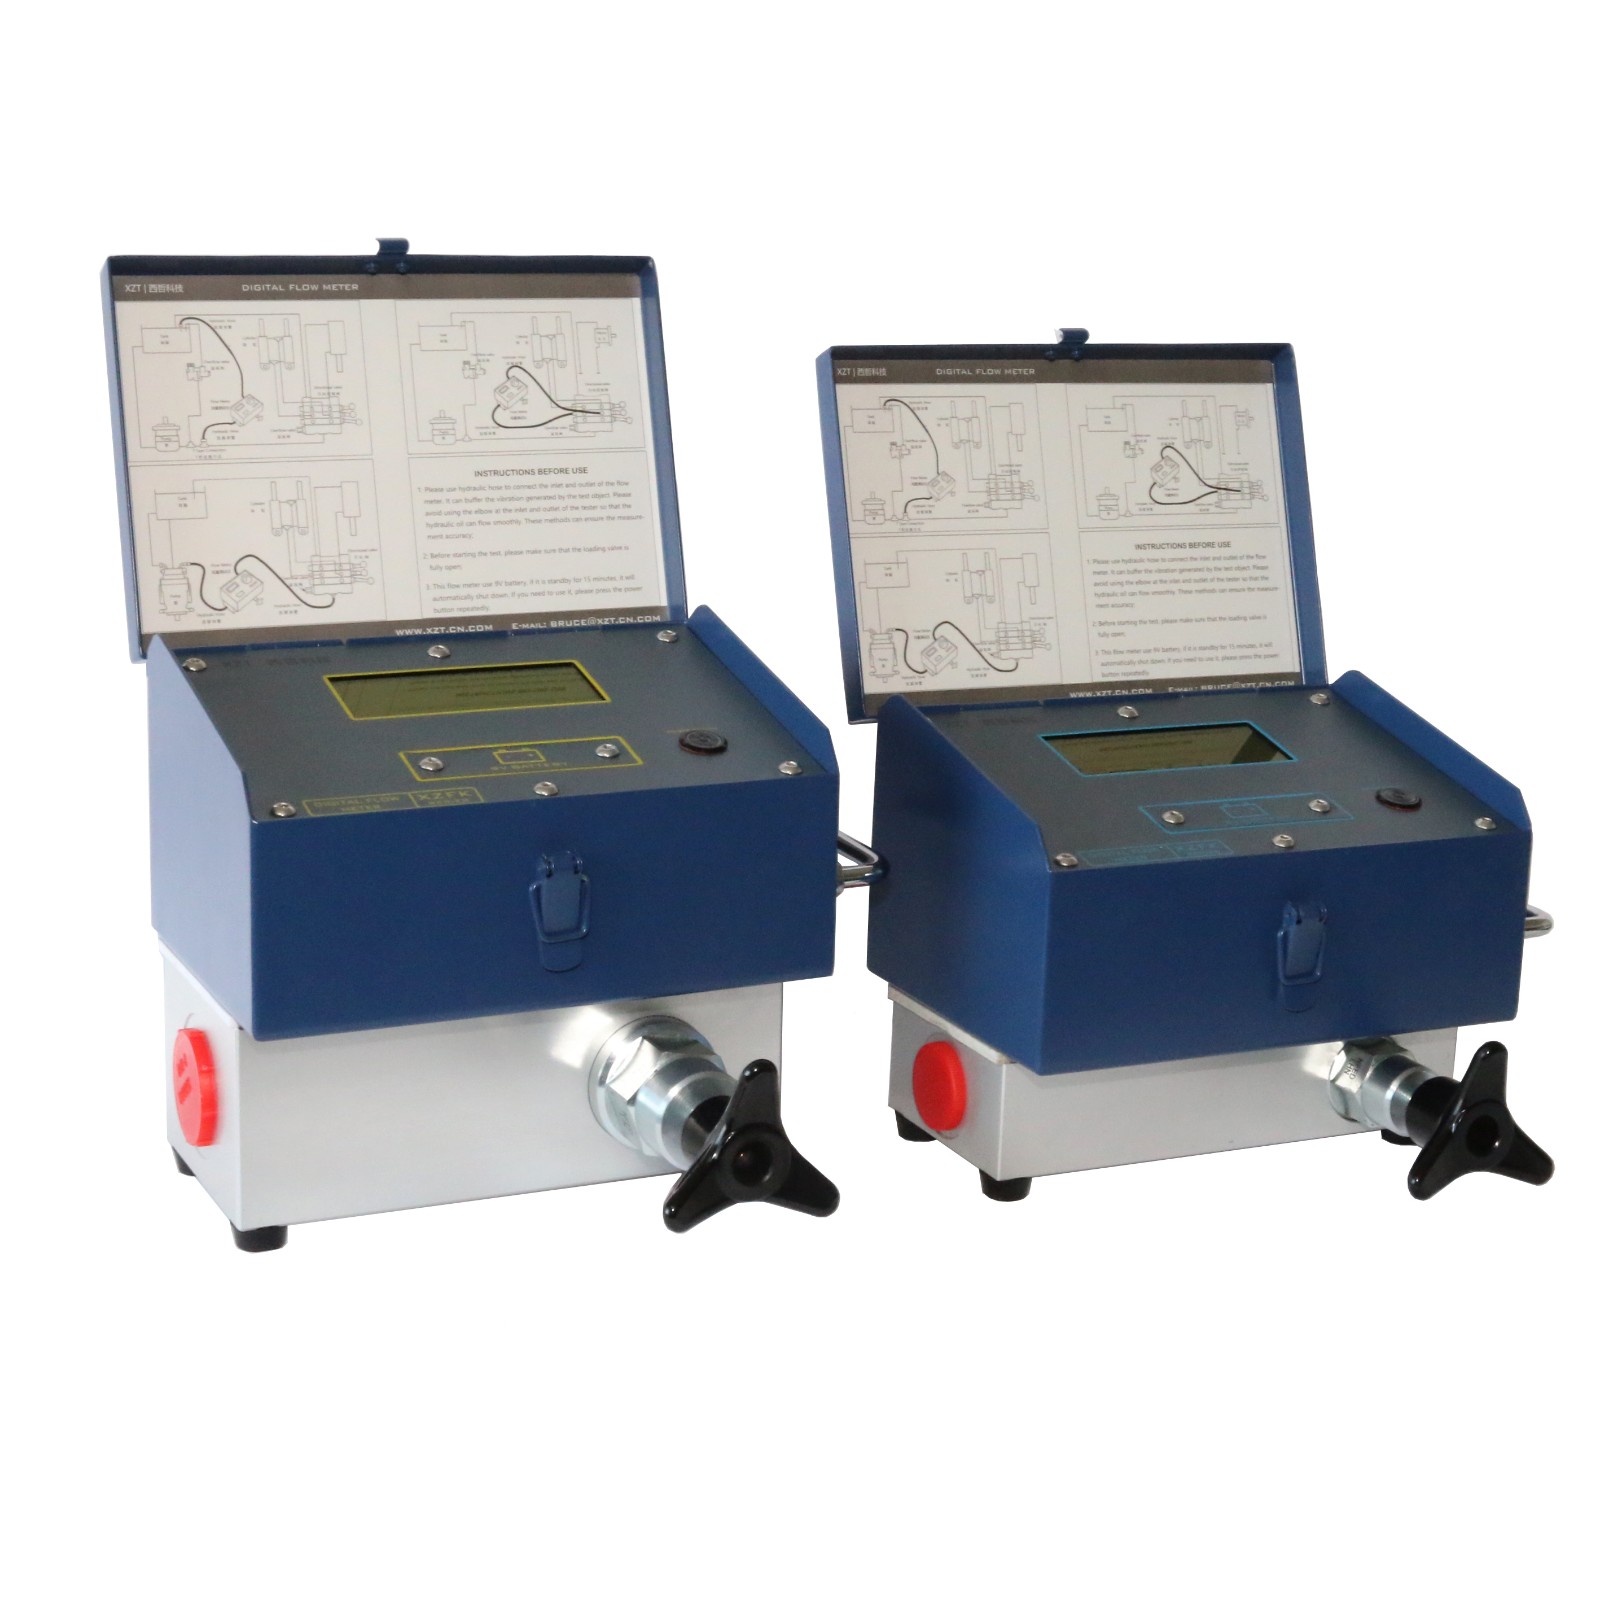 Digital Flow Meter/Pressure /Temperature Tester  XZFK-404